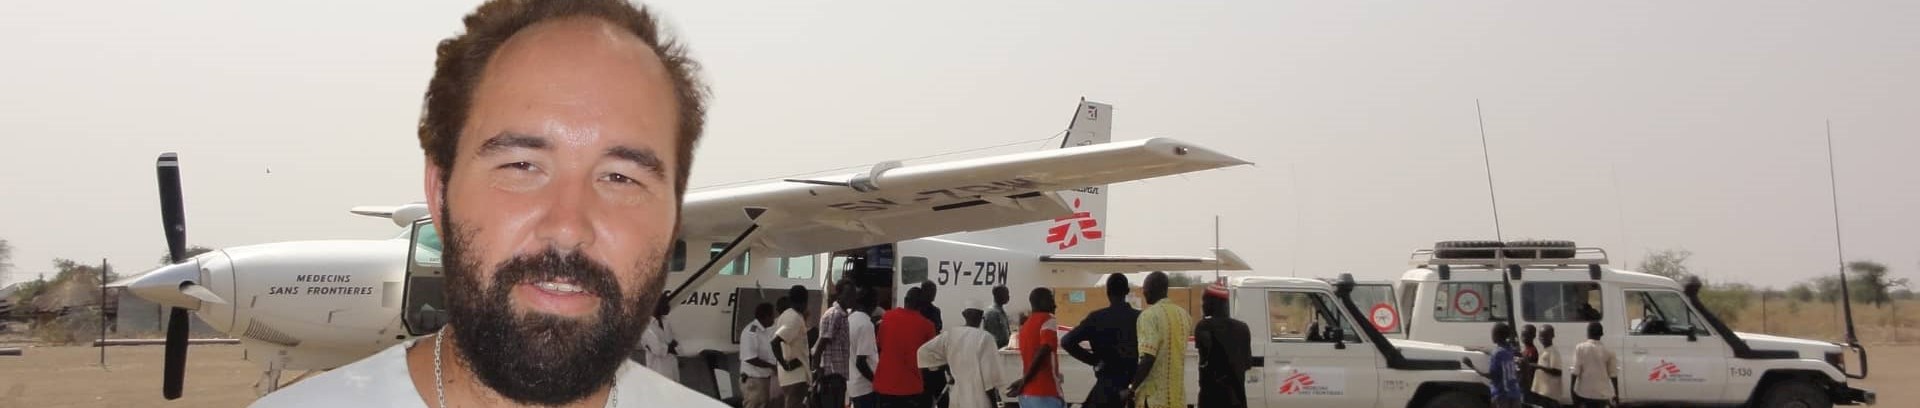 Dan Schøler fra Læger uden Grænser foran nødhjælpsfly i Afrika